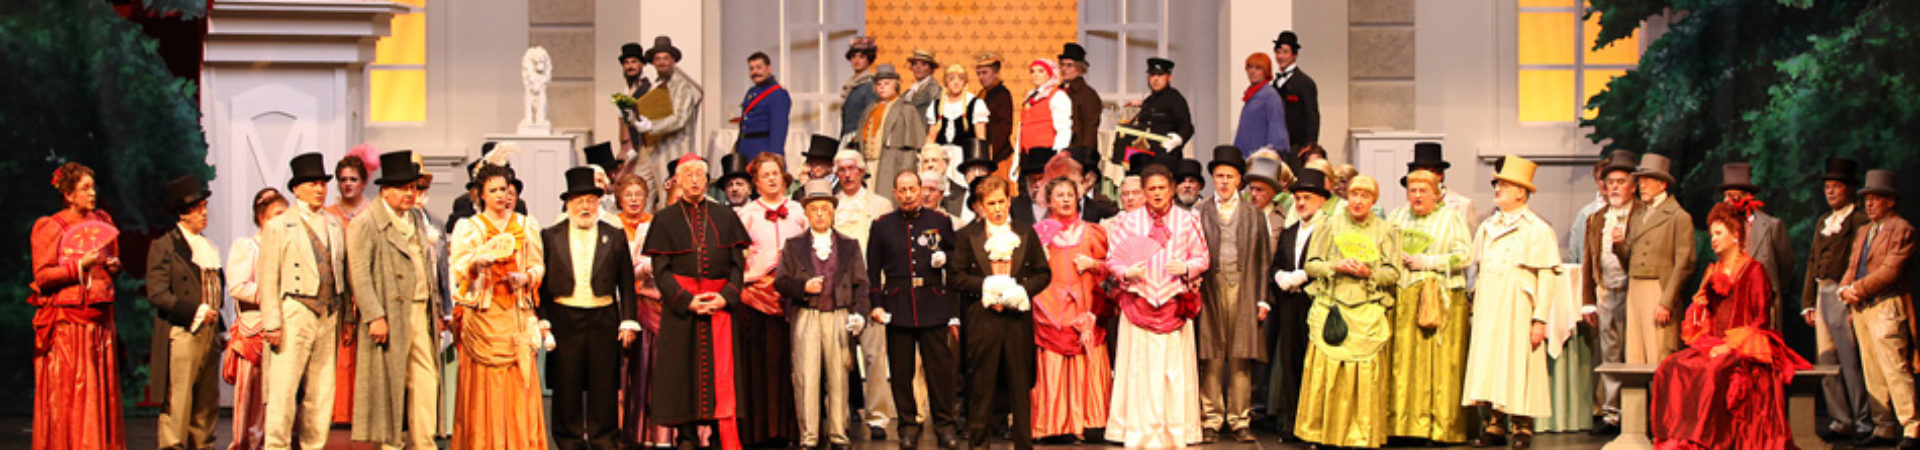 Die kölsche Witwe - Divertissementchen 2011 - Großer Chor vor Stadthaus am historischen Neumarkt